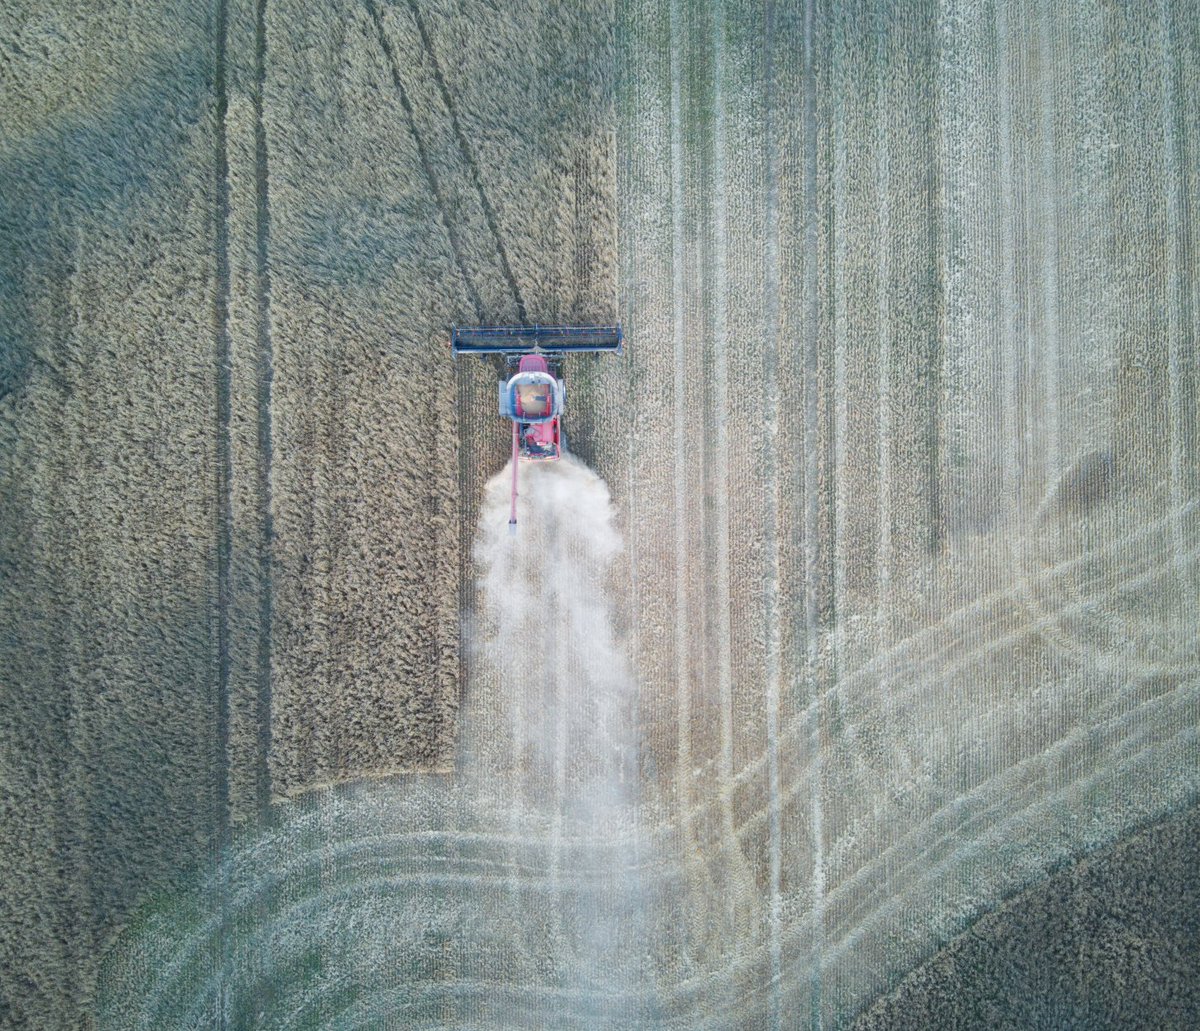 harvester
birds eye view
🤟
#djiAir2
#DJI #aerialphoto